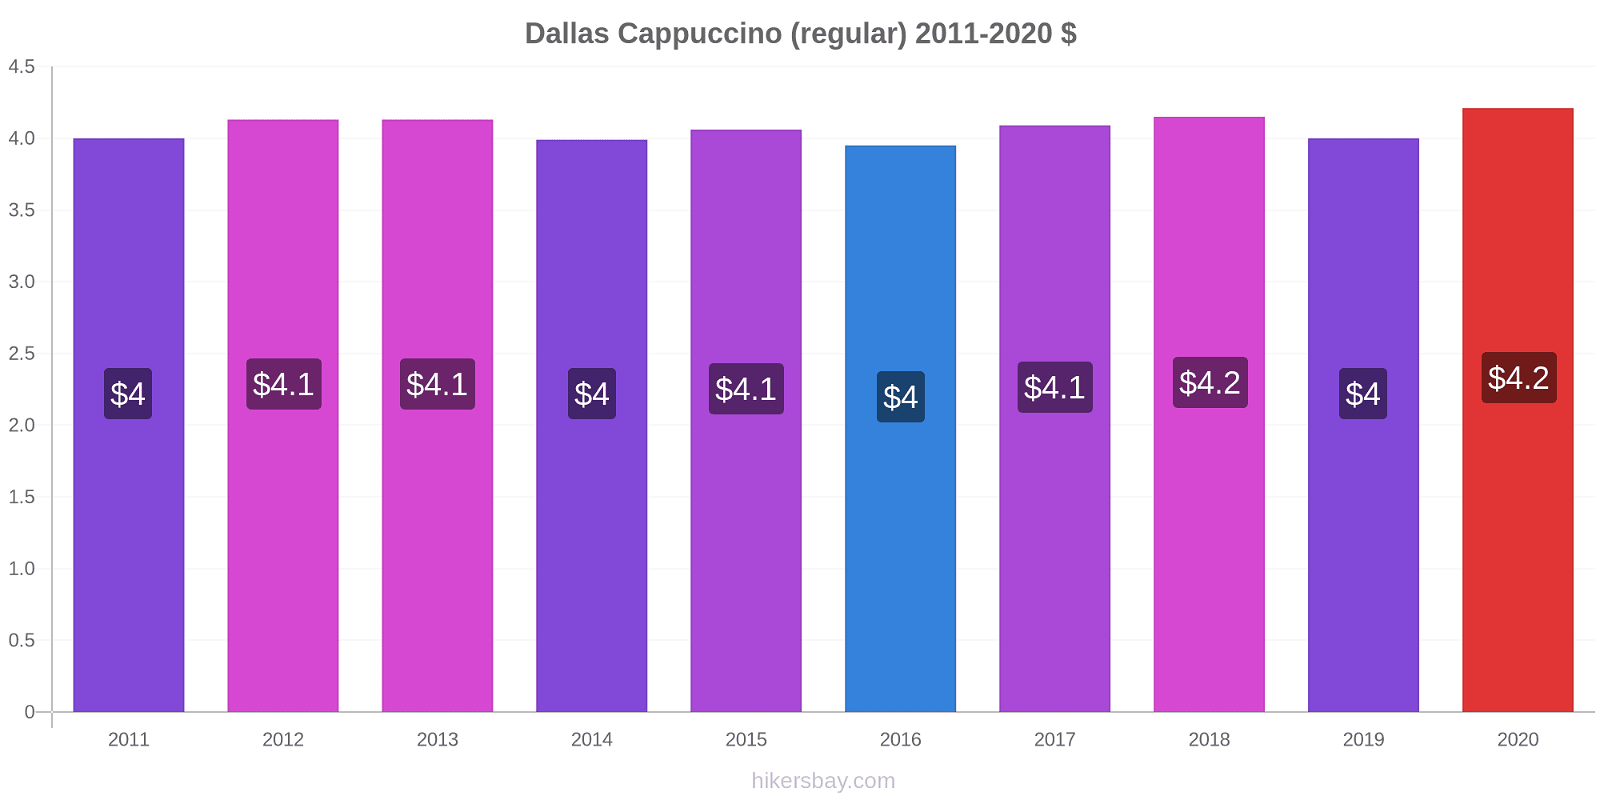 Dallas variação de preço Capuccino (regular) hikersbay.com